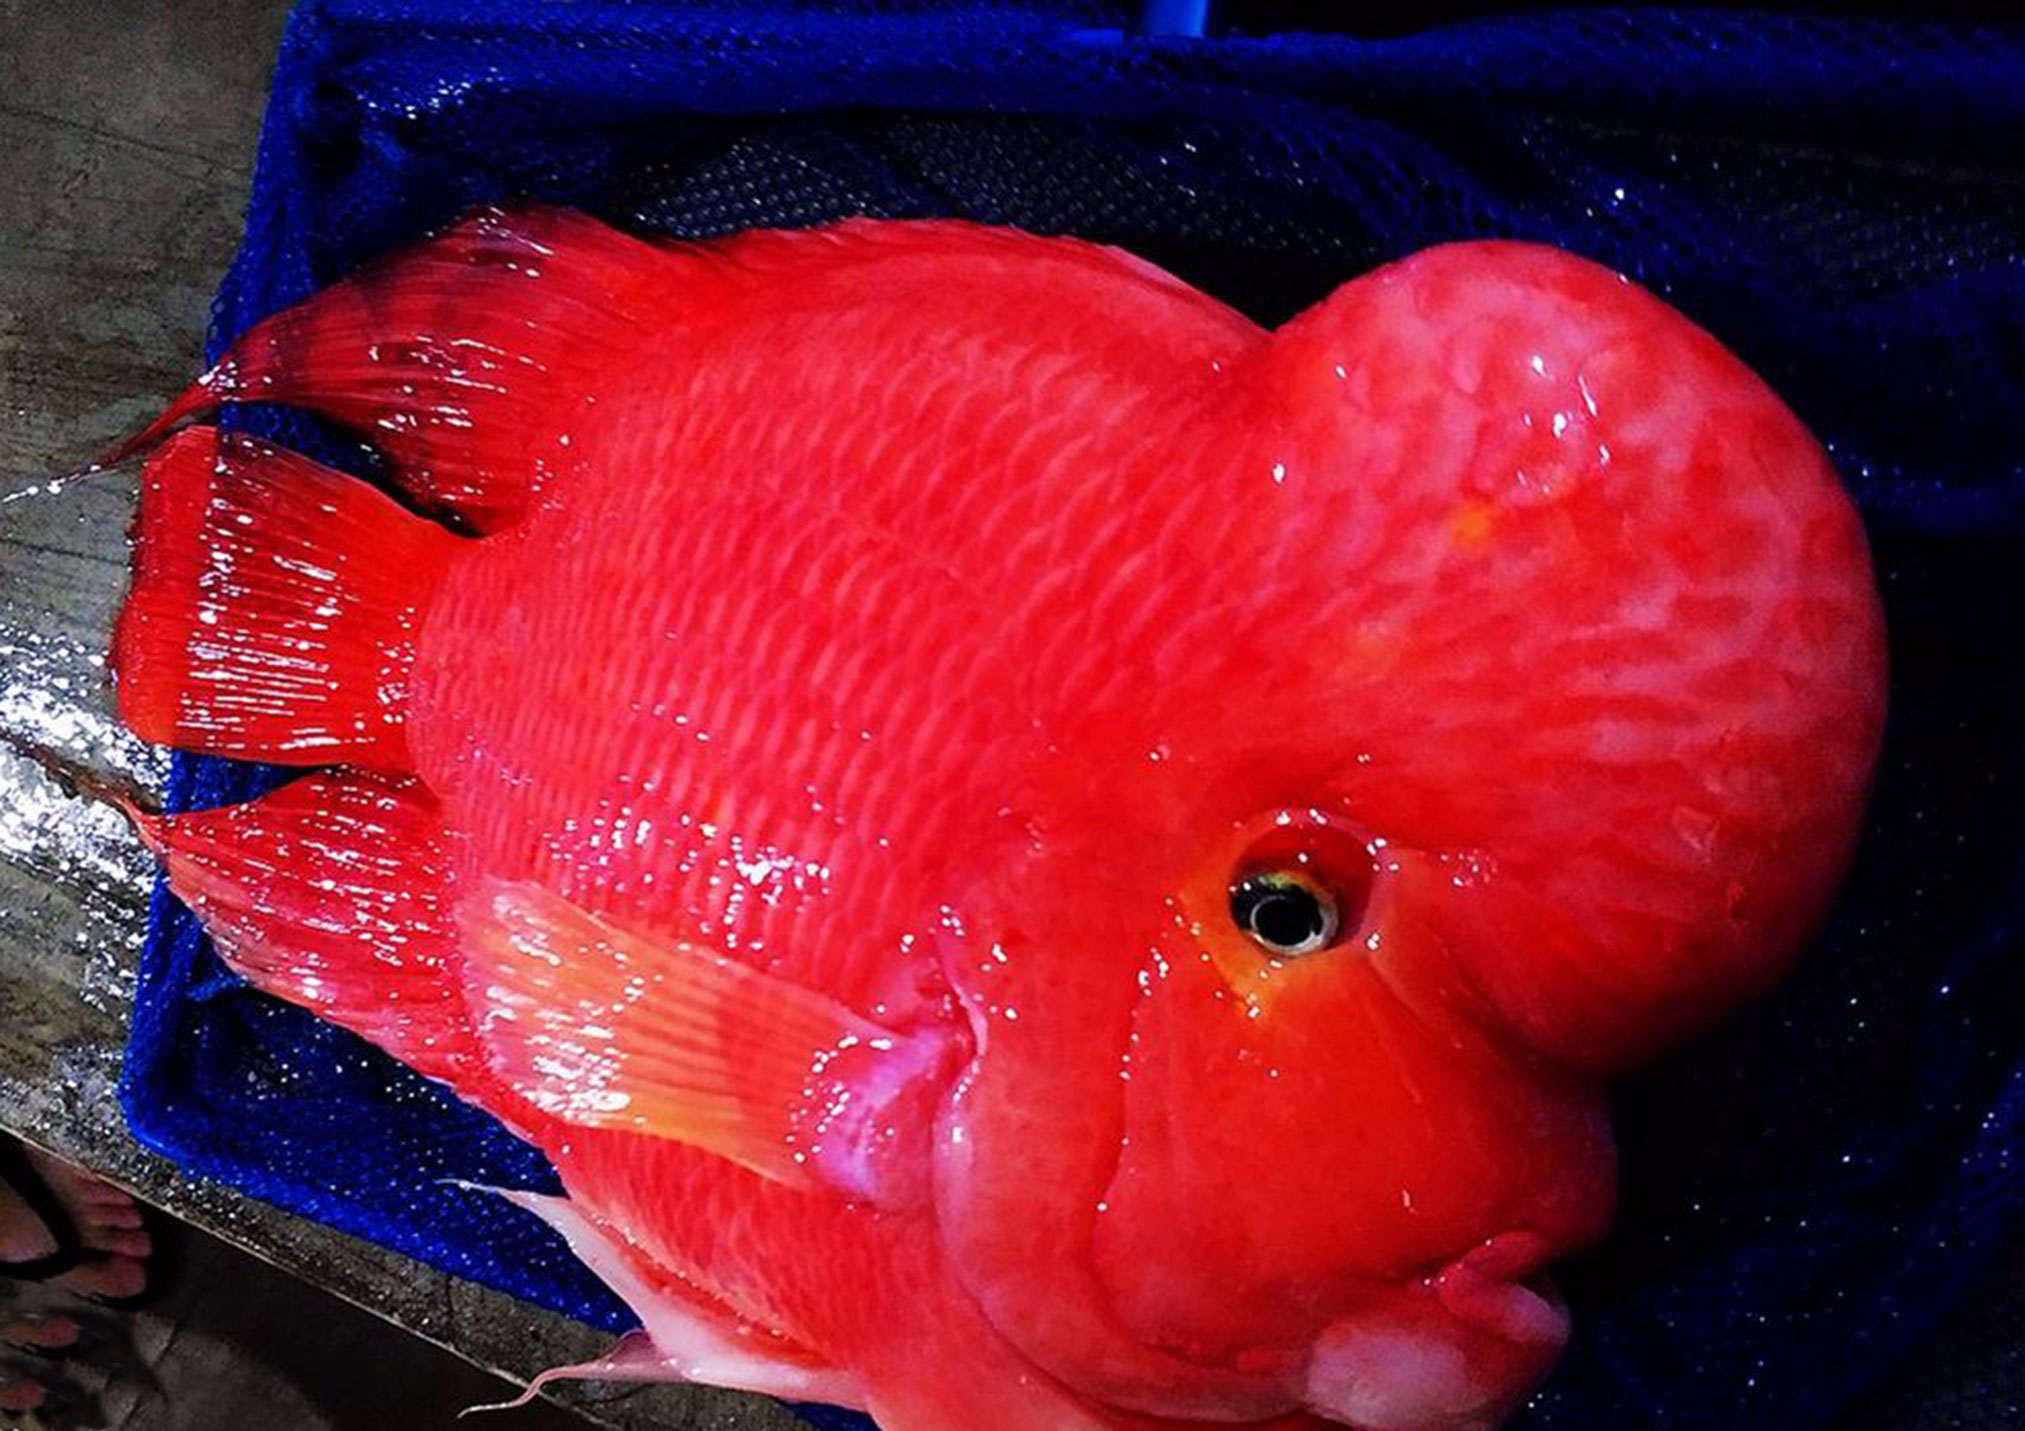 开心渔场在2017年4月宣布,正宗"噶玛兰红财神鱼"起售尺寸为23cm.